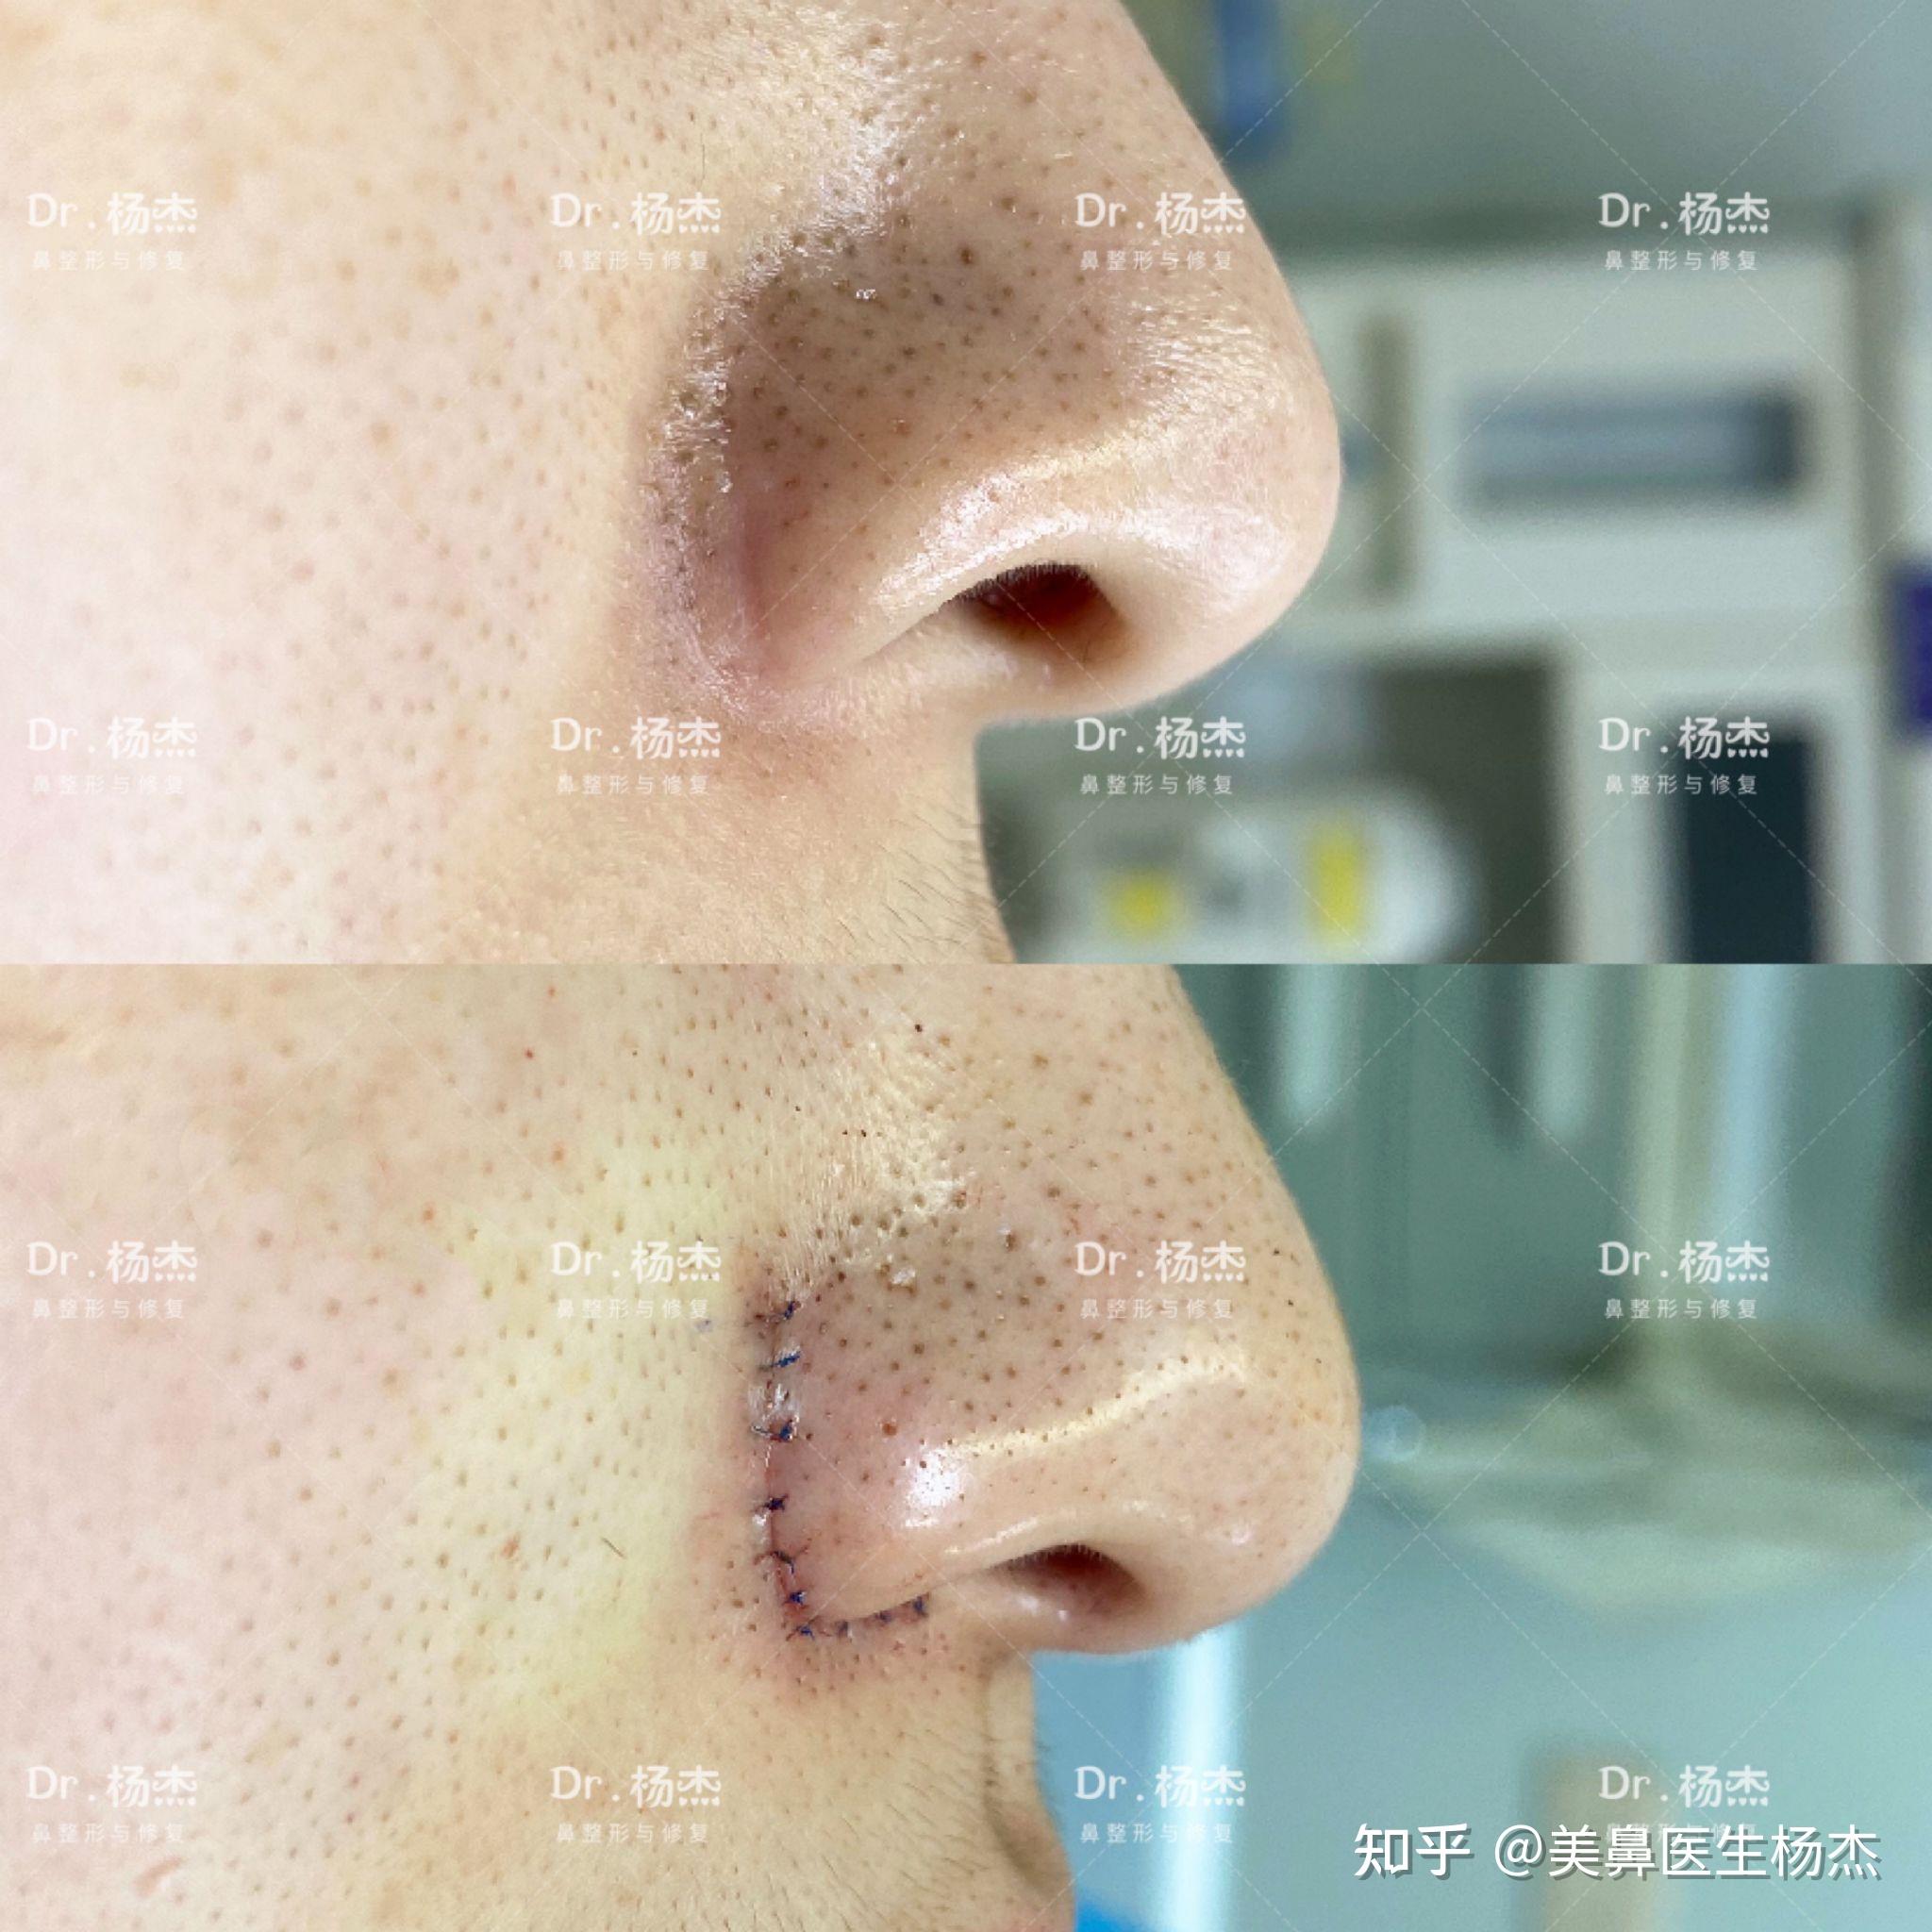 【内外联合鼻翼缩小】 术前情况:术前1年行鼻翼外切术,术后遗留疤痕